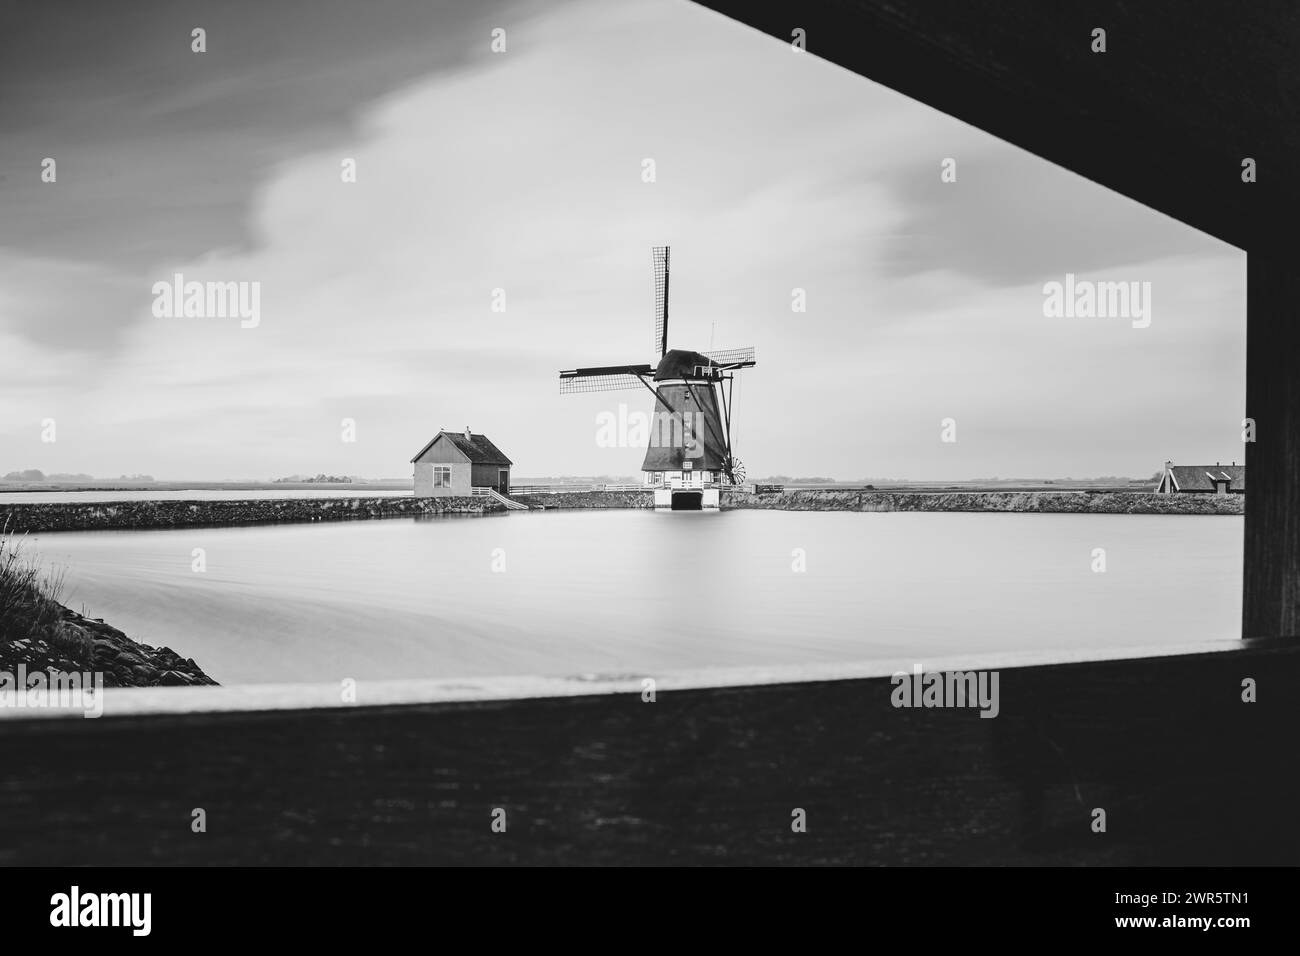 Moulin à vent sur l'île de la mer des wadden Texel appartenant aux Nehterlands, Europe, point de repère touristique dans son paysage Banque D'Images